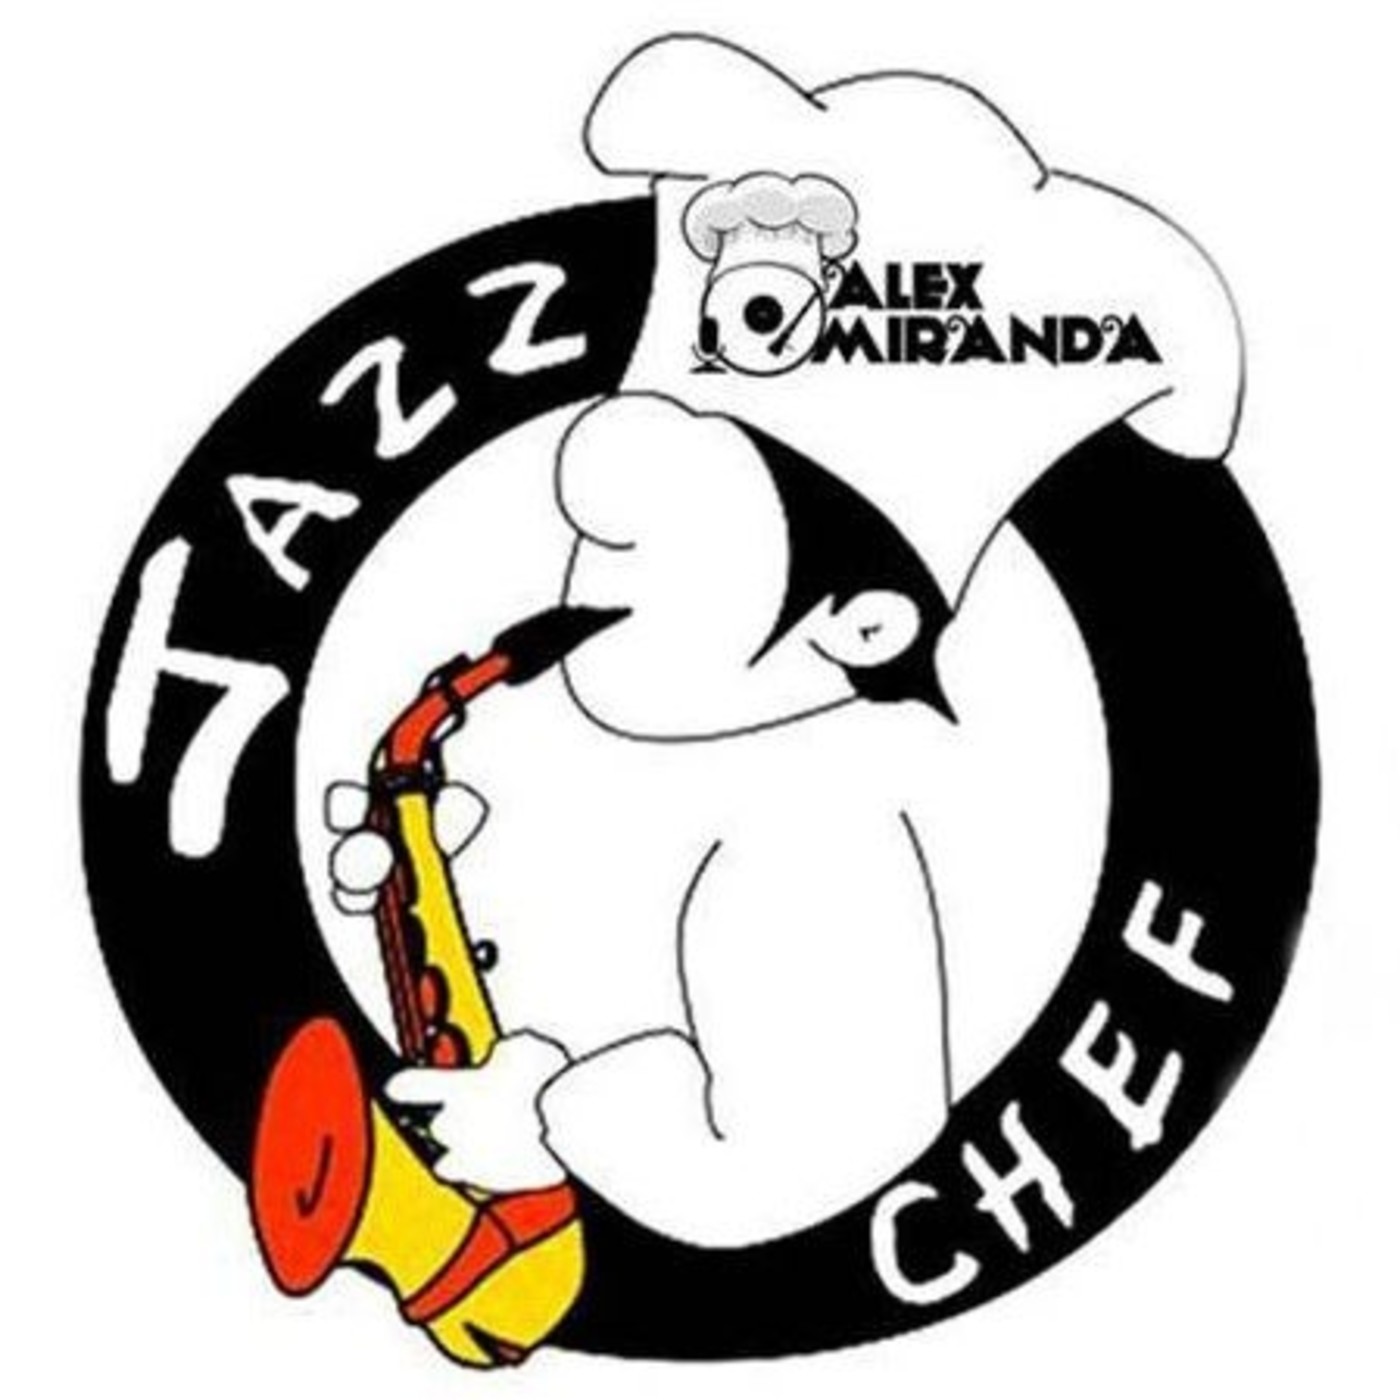 2017/06/10 - A la sazón del Jazz